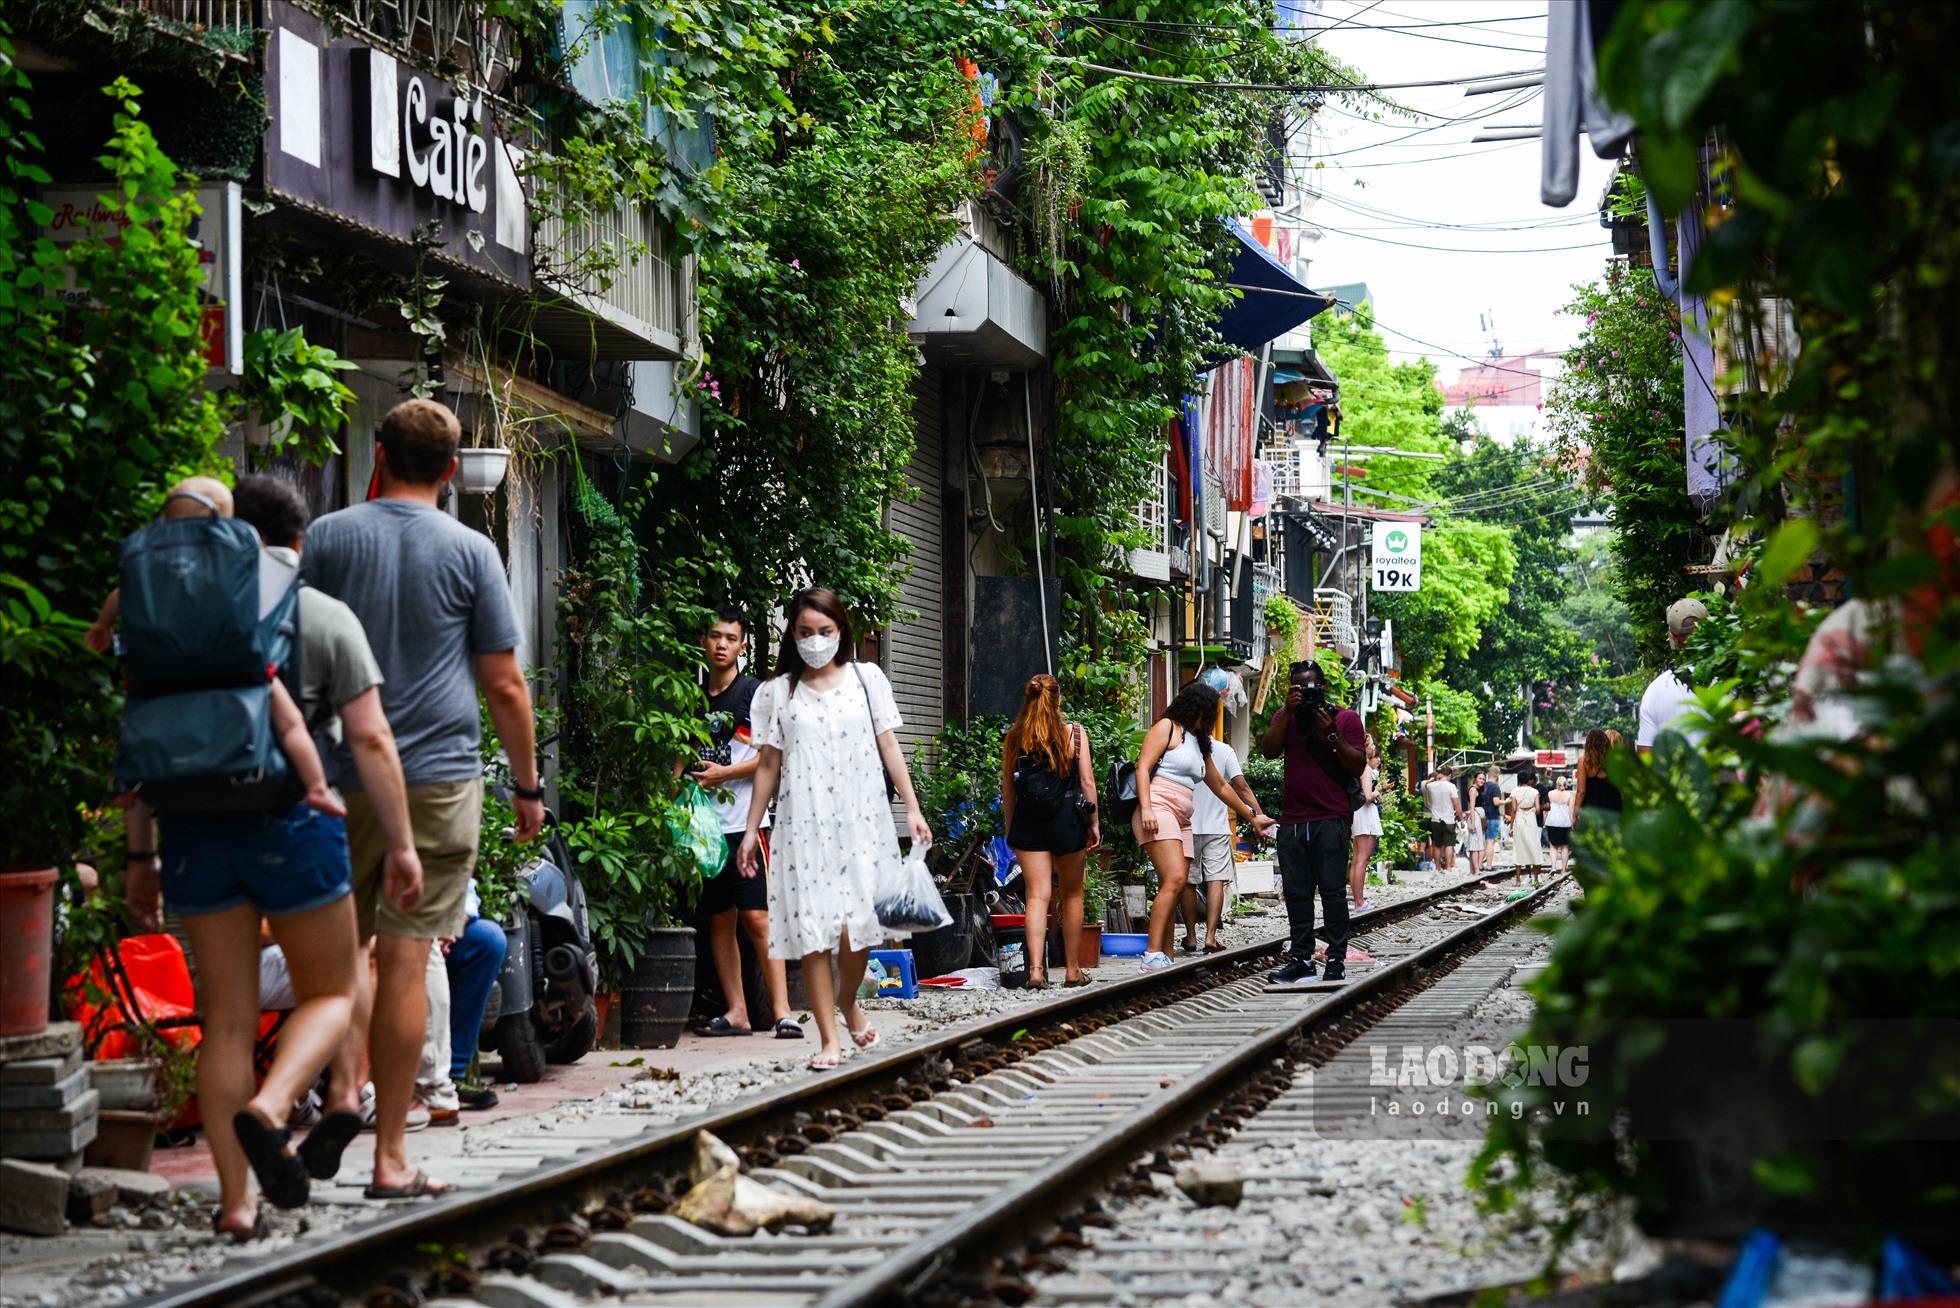 Đặc biệt, nhiều du khách vì không thể vào được phố đường tàu Phùng Hưng, đã đổ xô sang phía đường tàu Điện Biên Phủ để check – in, chụp ảnh khiến nơi đây trở nên đông đúc.